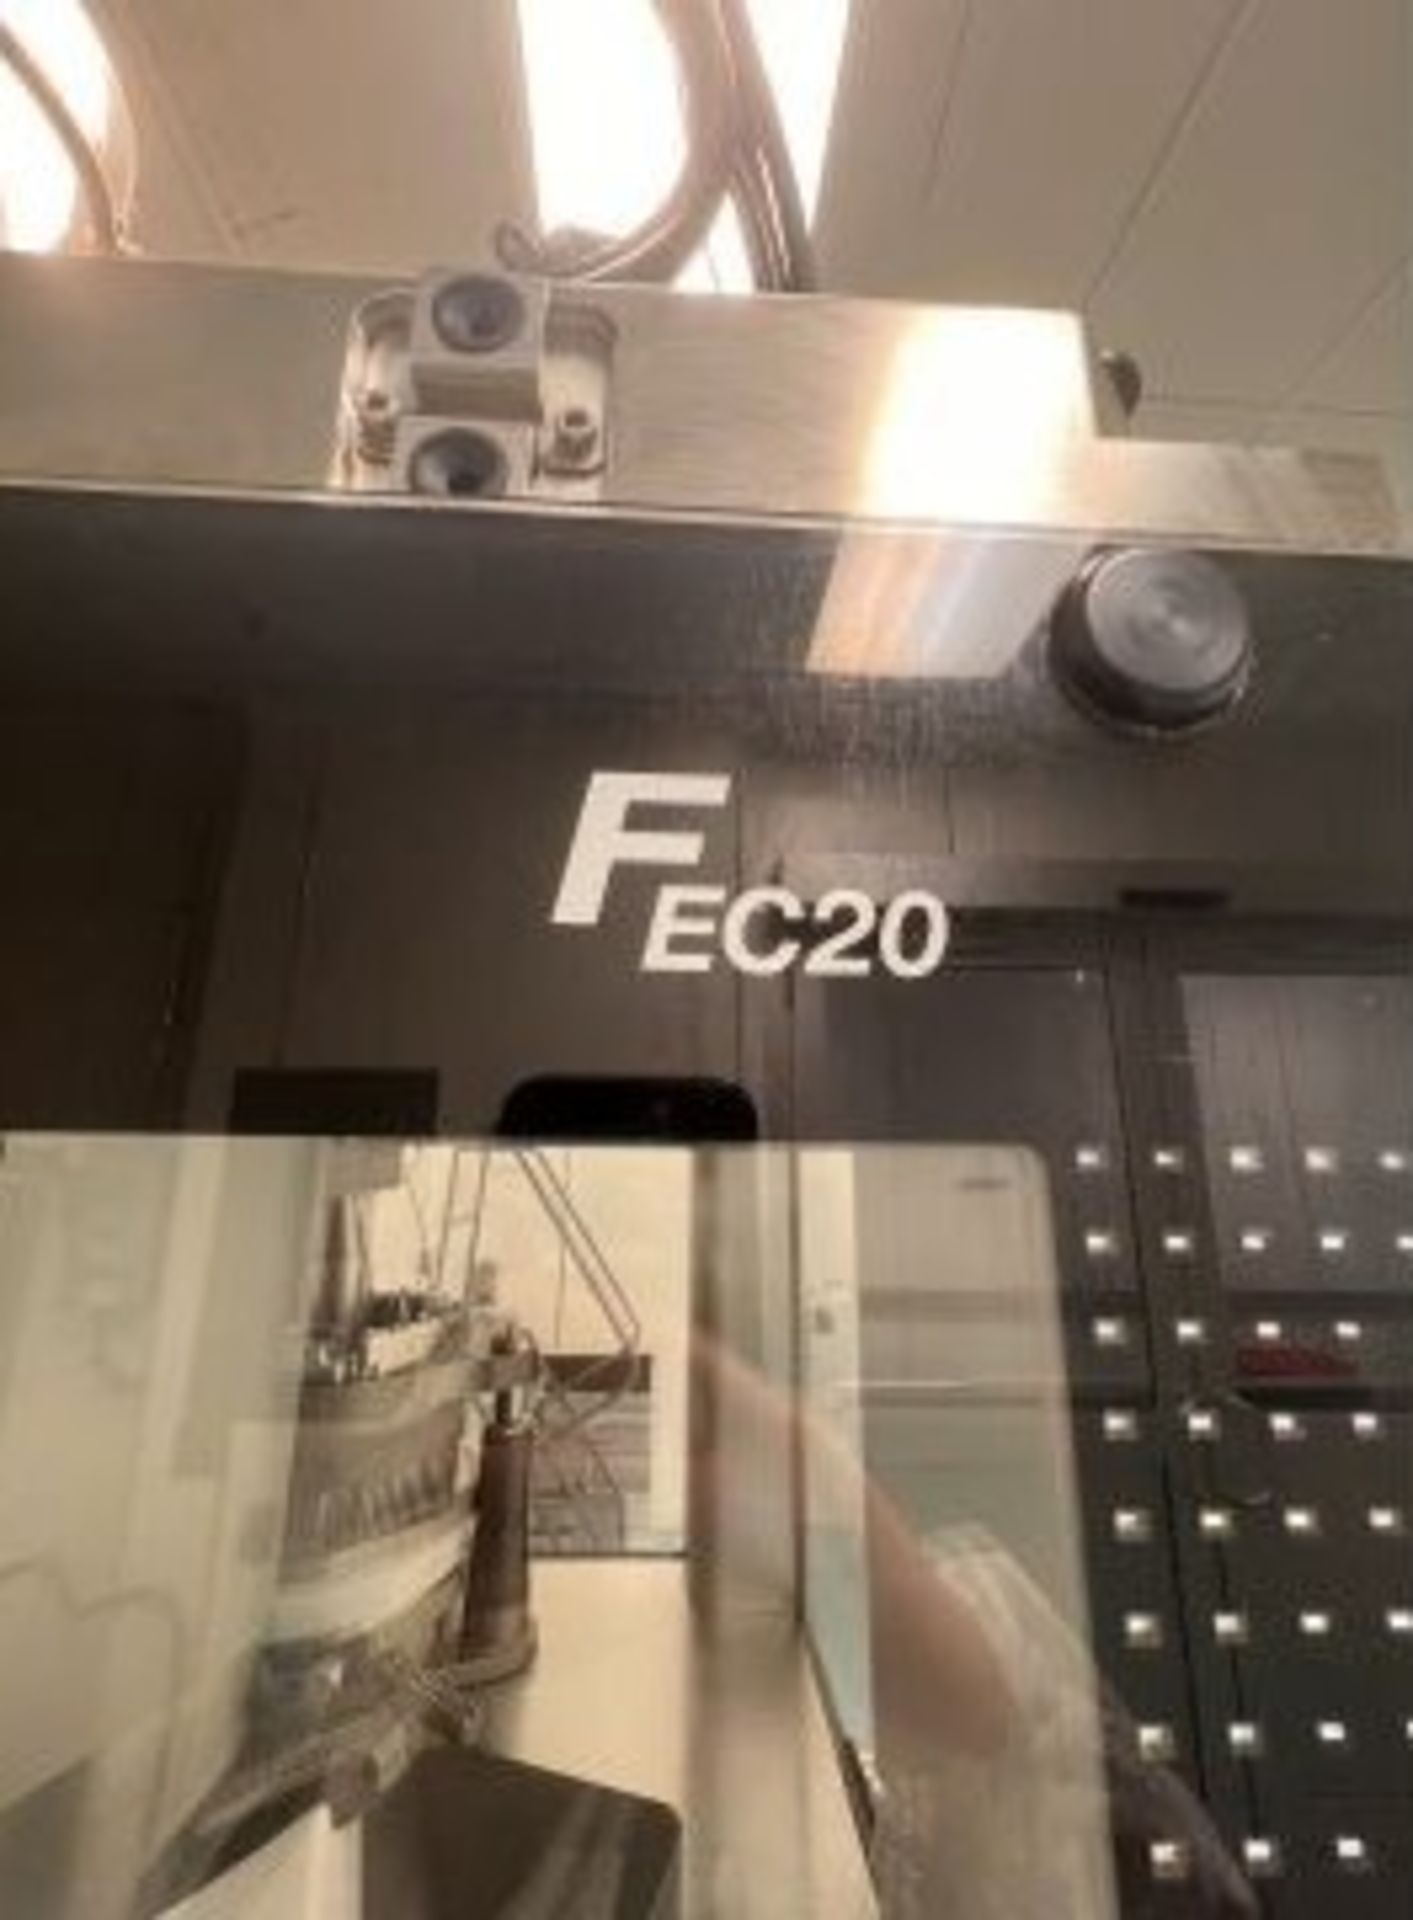 2019 Fette Compacting Capsule Filling Machine (Encapsulator), Model FE20, Machine Designation 9300- - Image 33 of 38